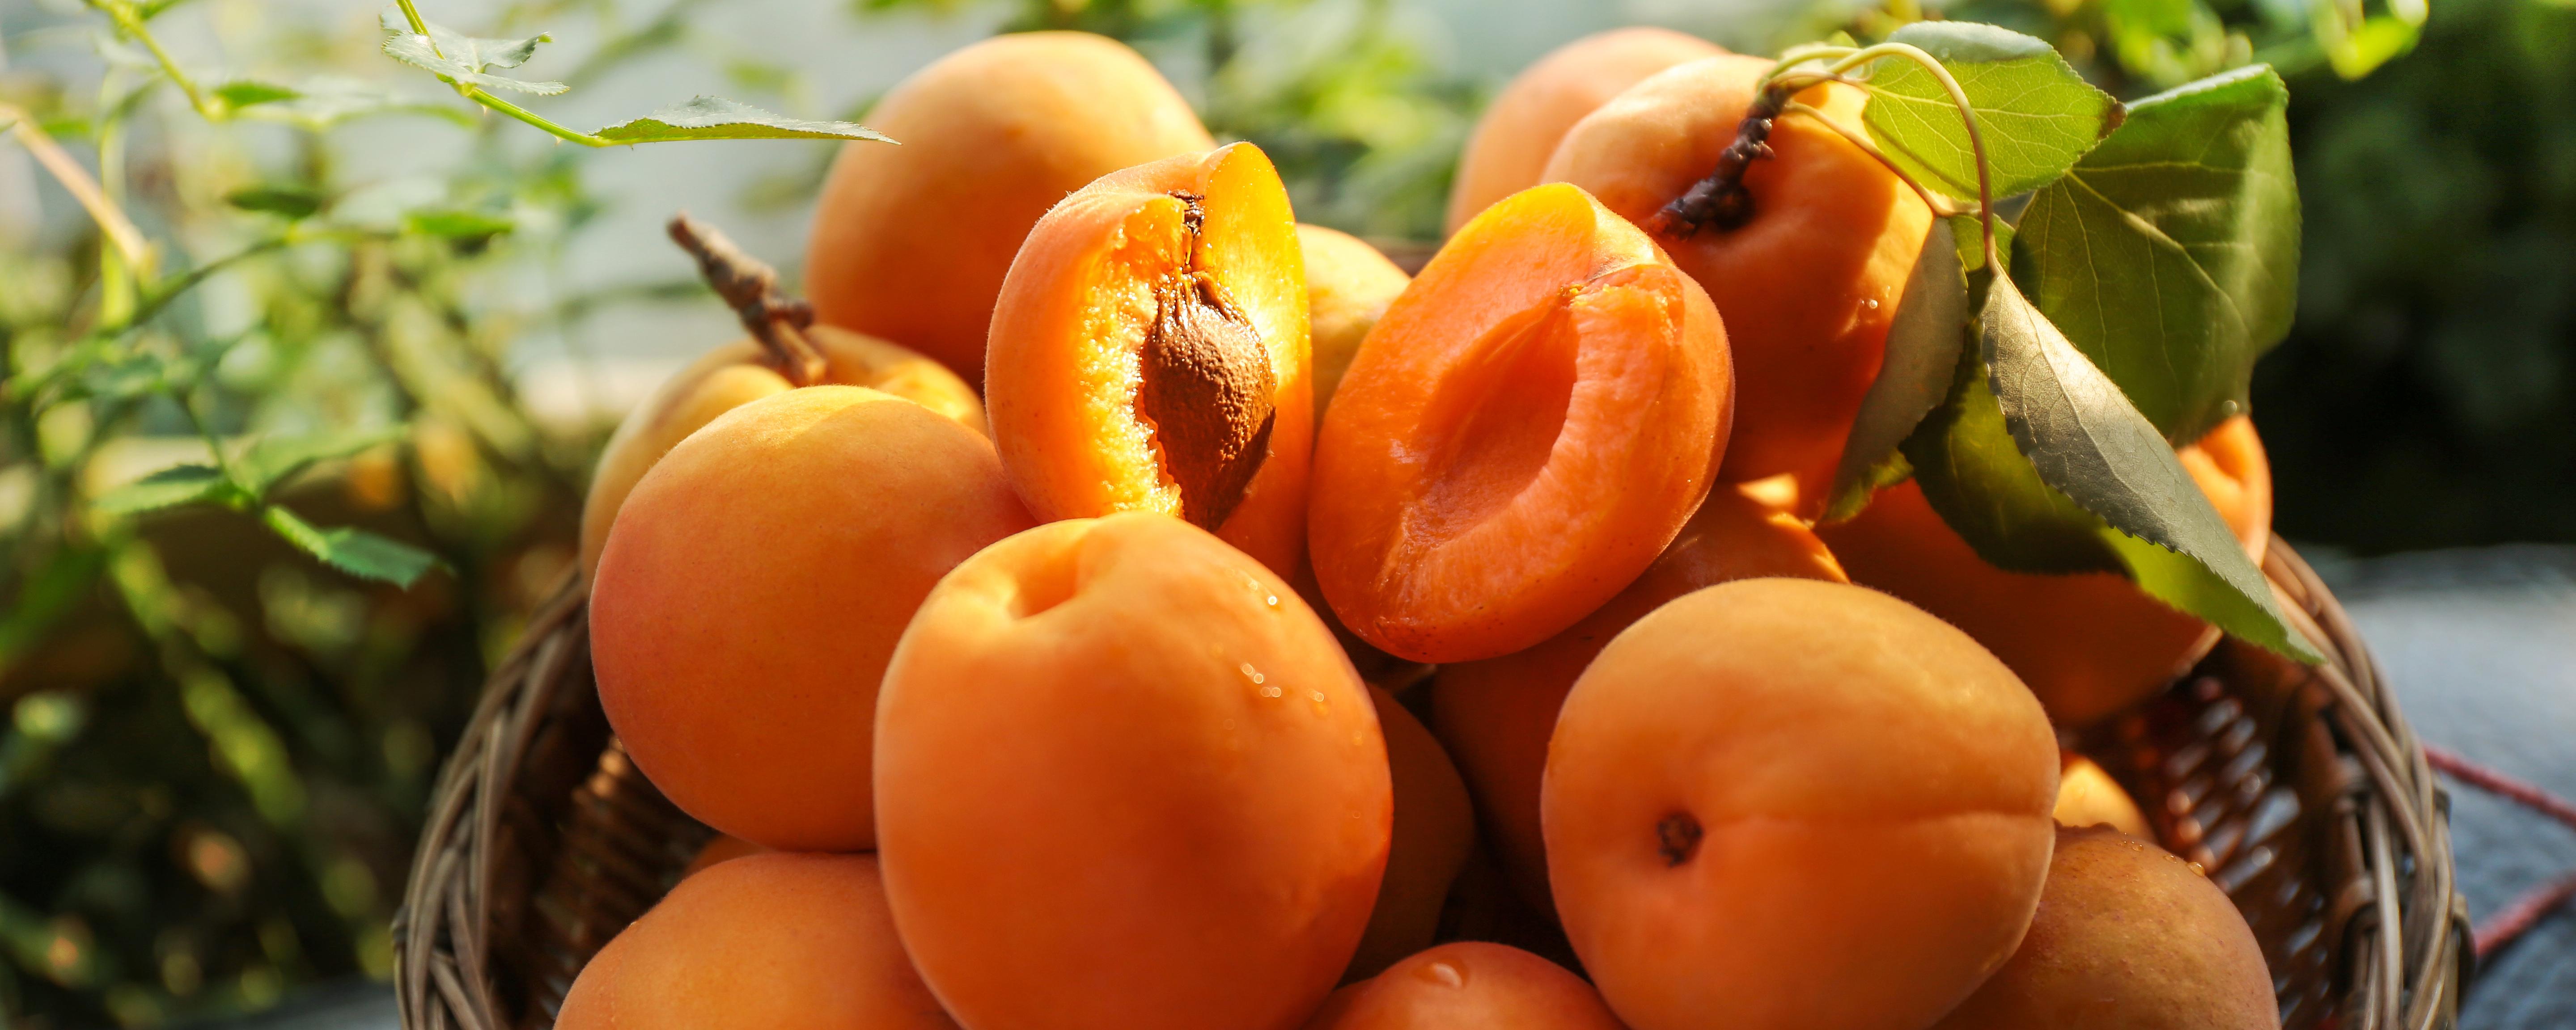 黄桃怎么保存时间长 黄桃怎么保存时间长又好吃